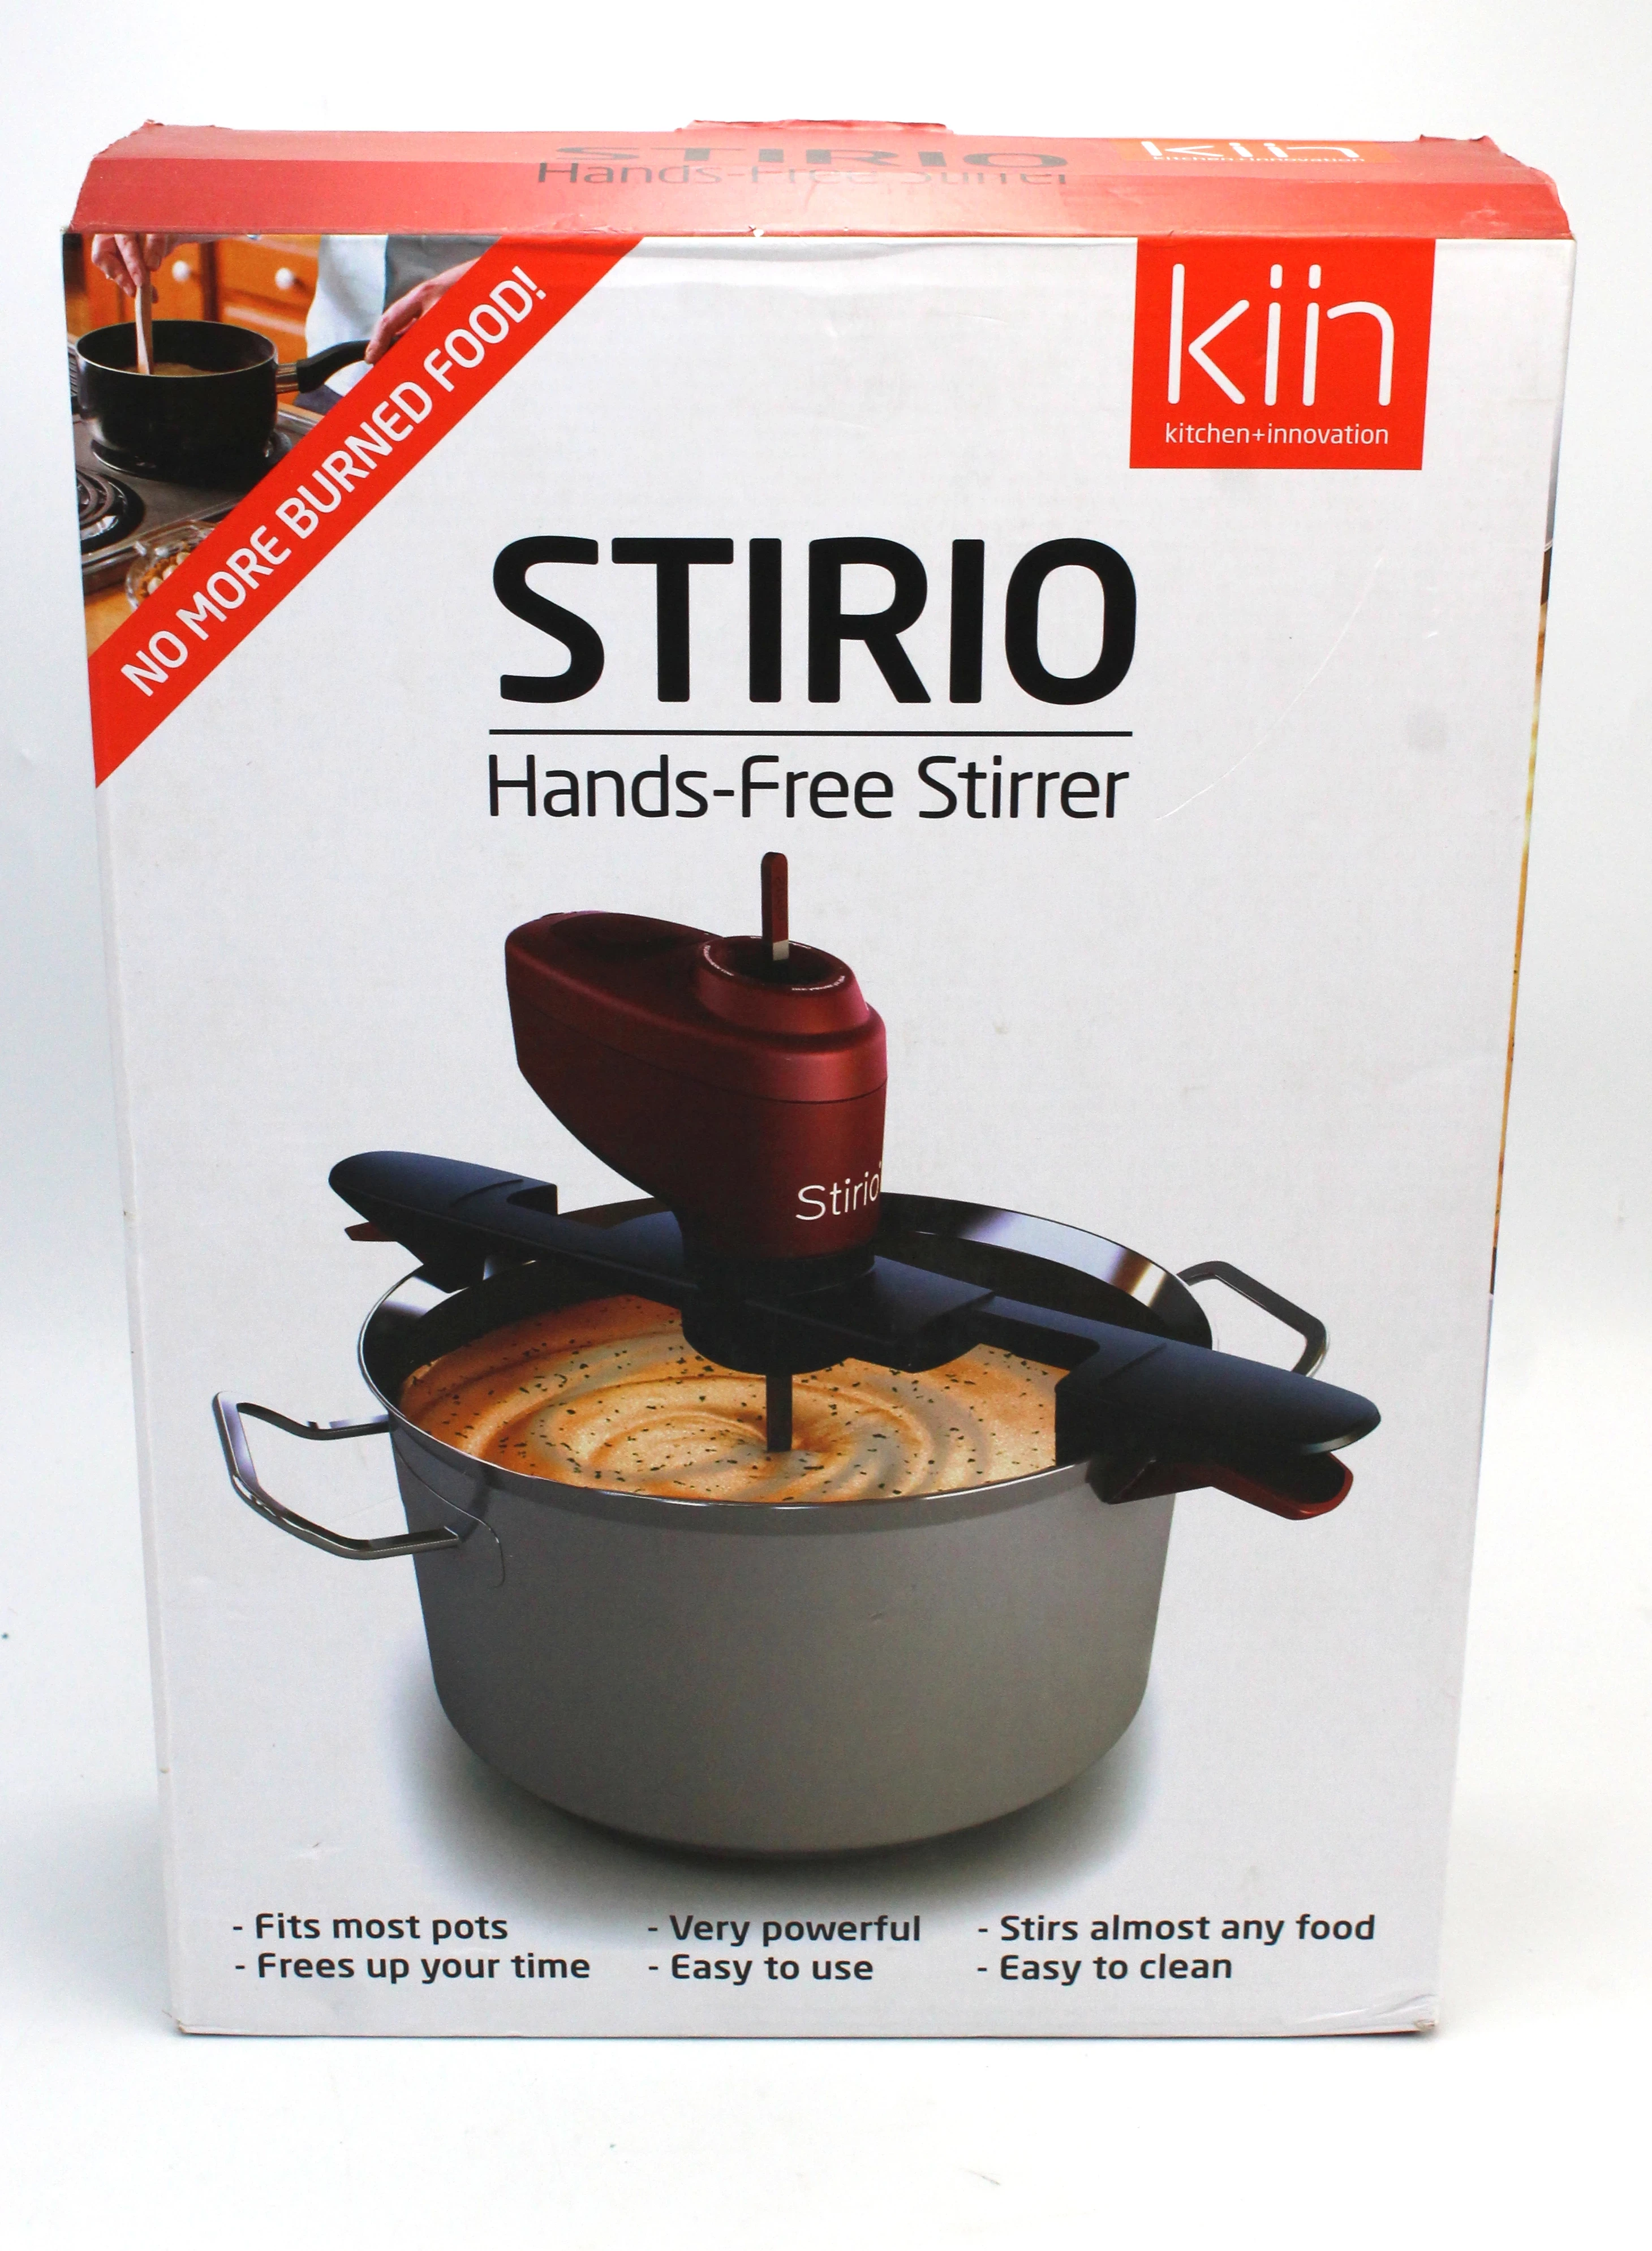 hands-free stirio